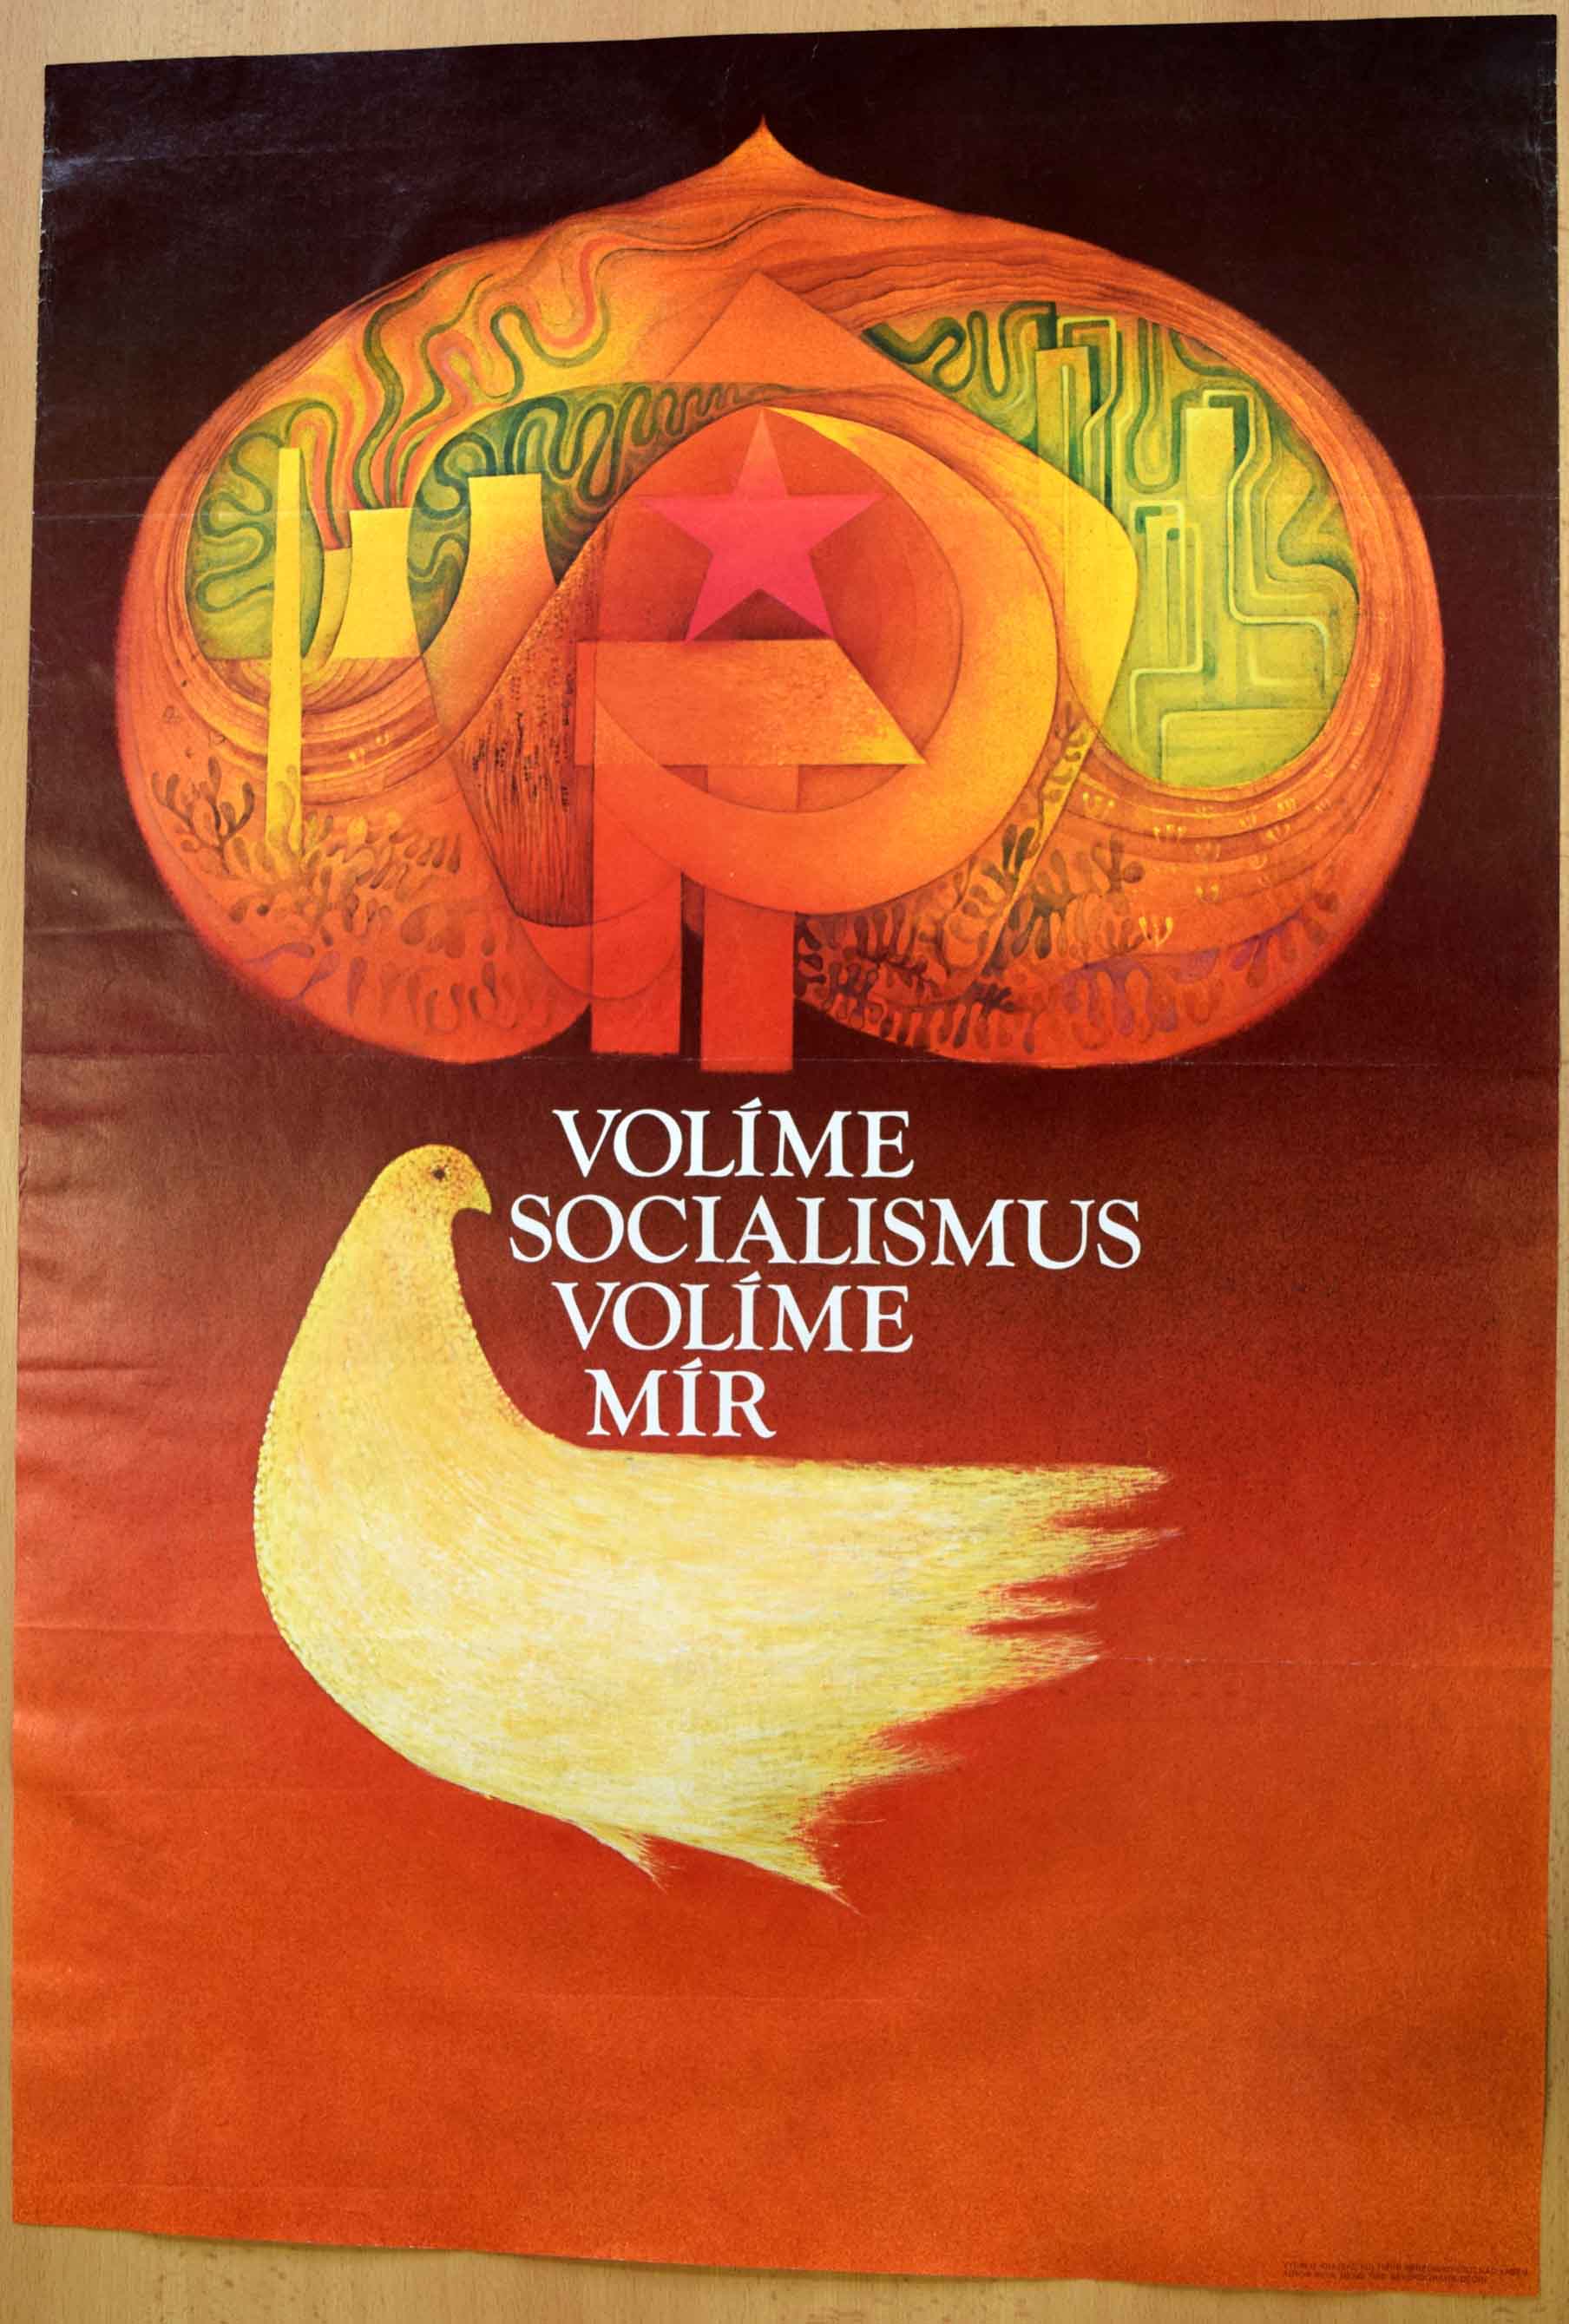 Volme socialismus, volme mír - plakát z 80. let 20. století